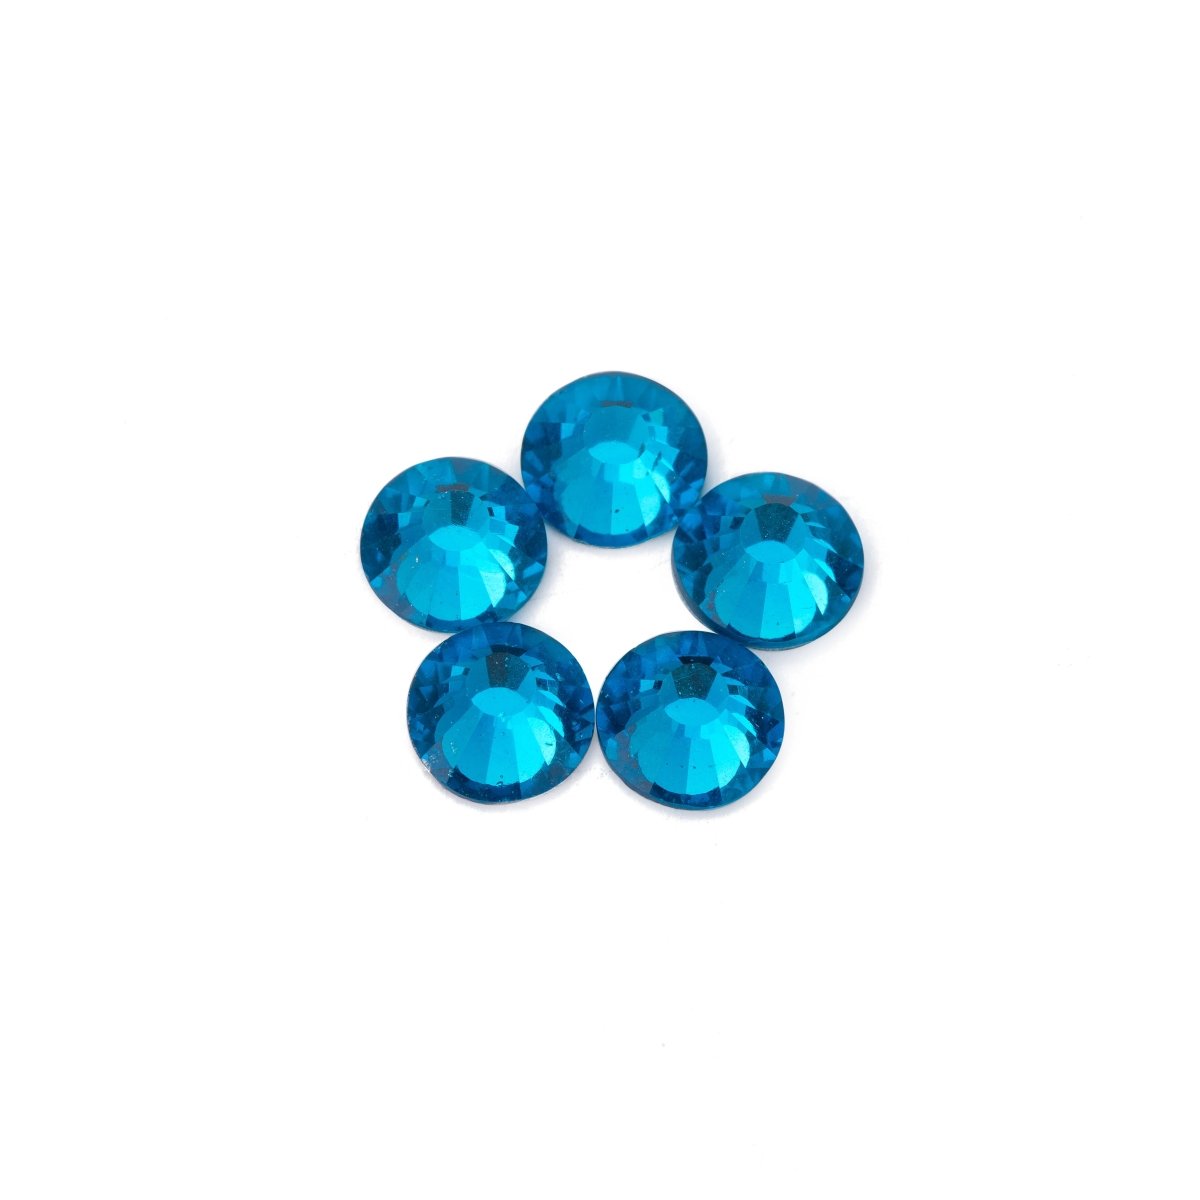 1440 pcs Crystal Teal Blue / Blue Zircon #229 - DLUXCA